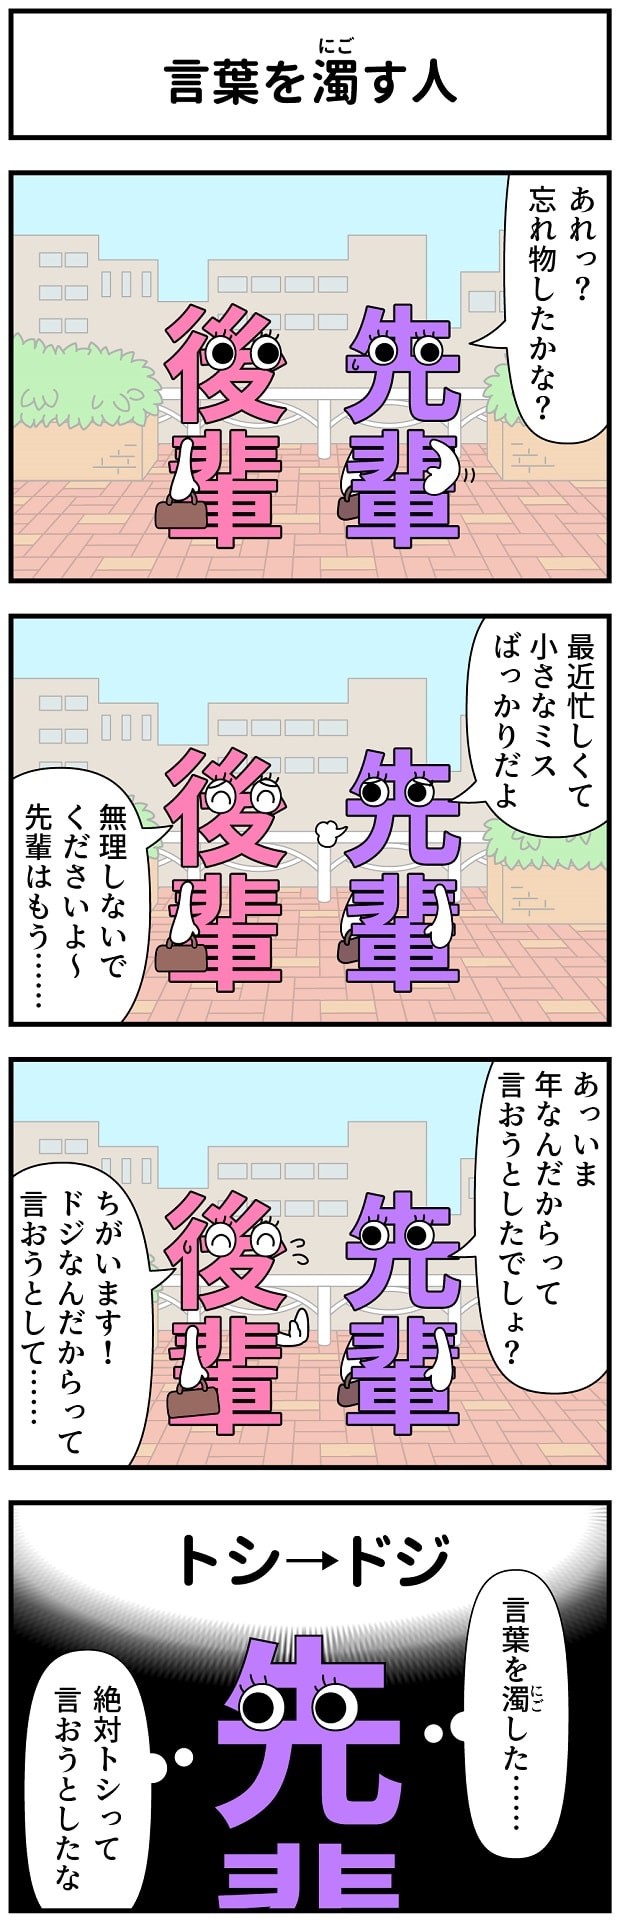 モノモース　漫画　マンガ　4コマ　漢字　働く　一仕事　タウンワークマガジン　townwork